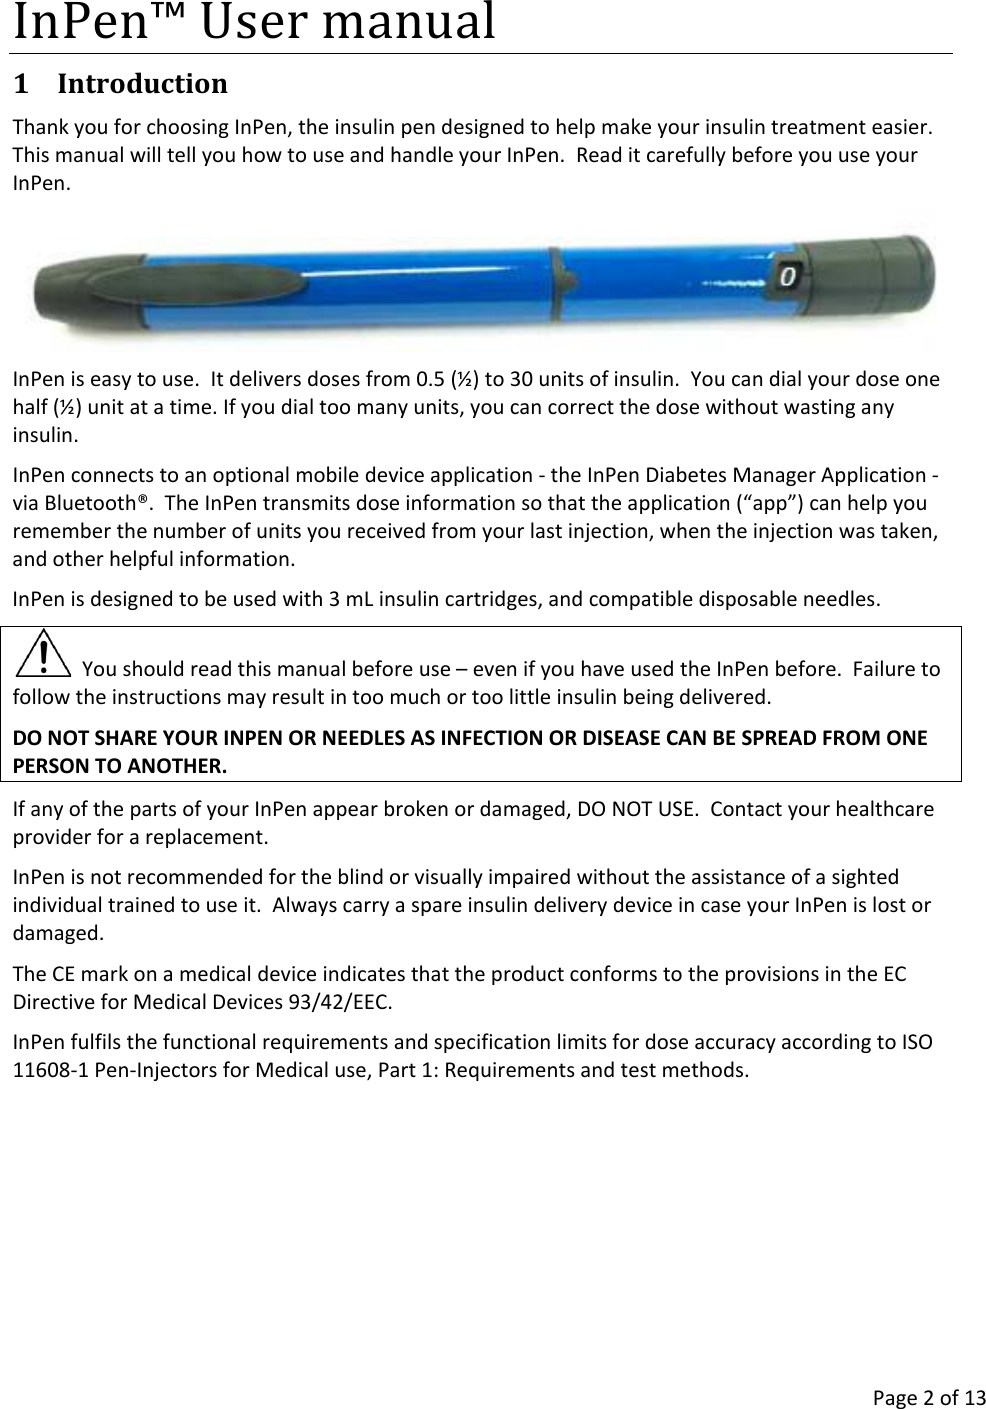 Companion Medical Inpen Reusable Pen Injector User Manual